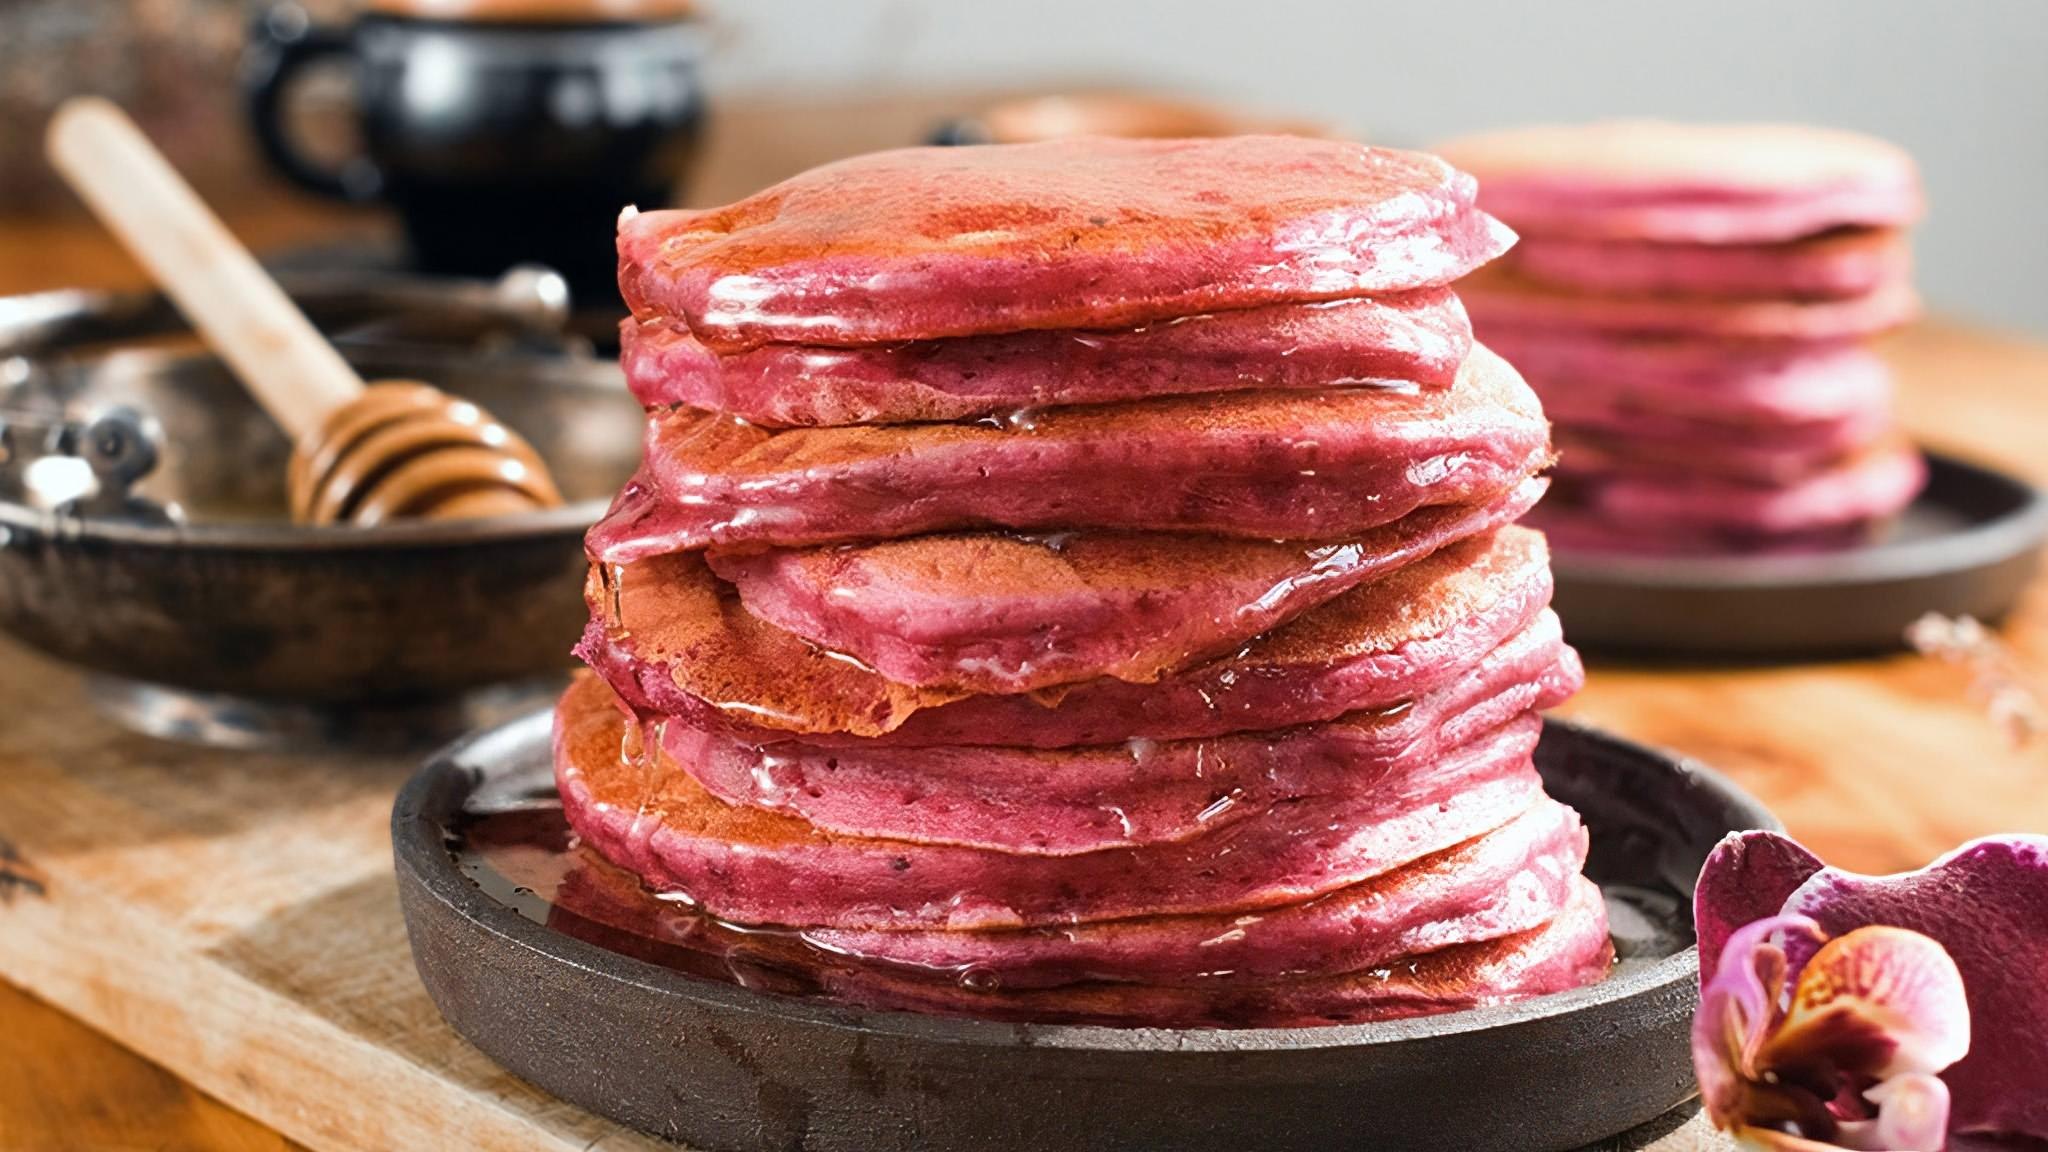 Pink Pancakes recipe